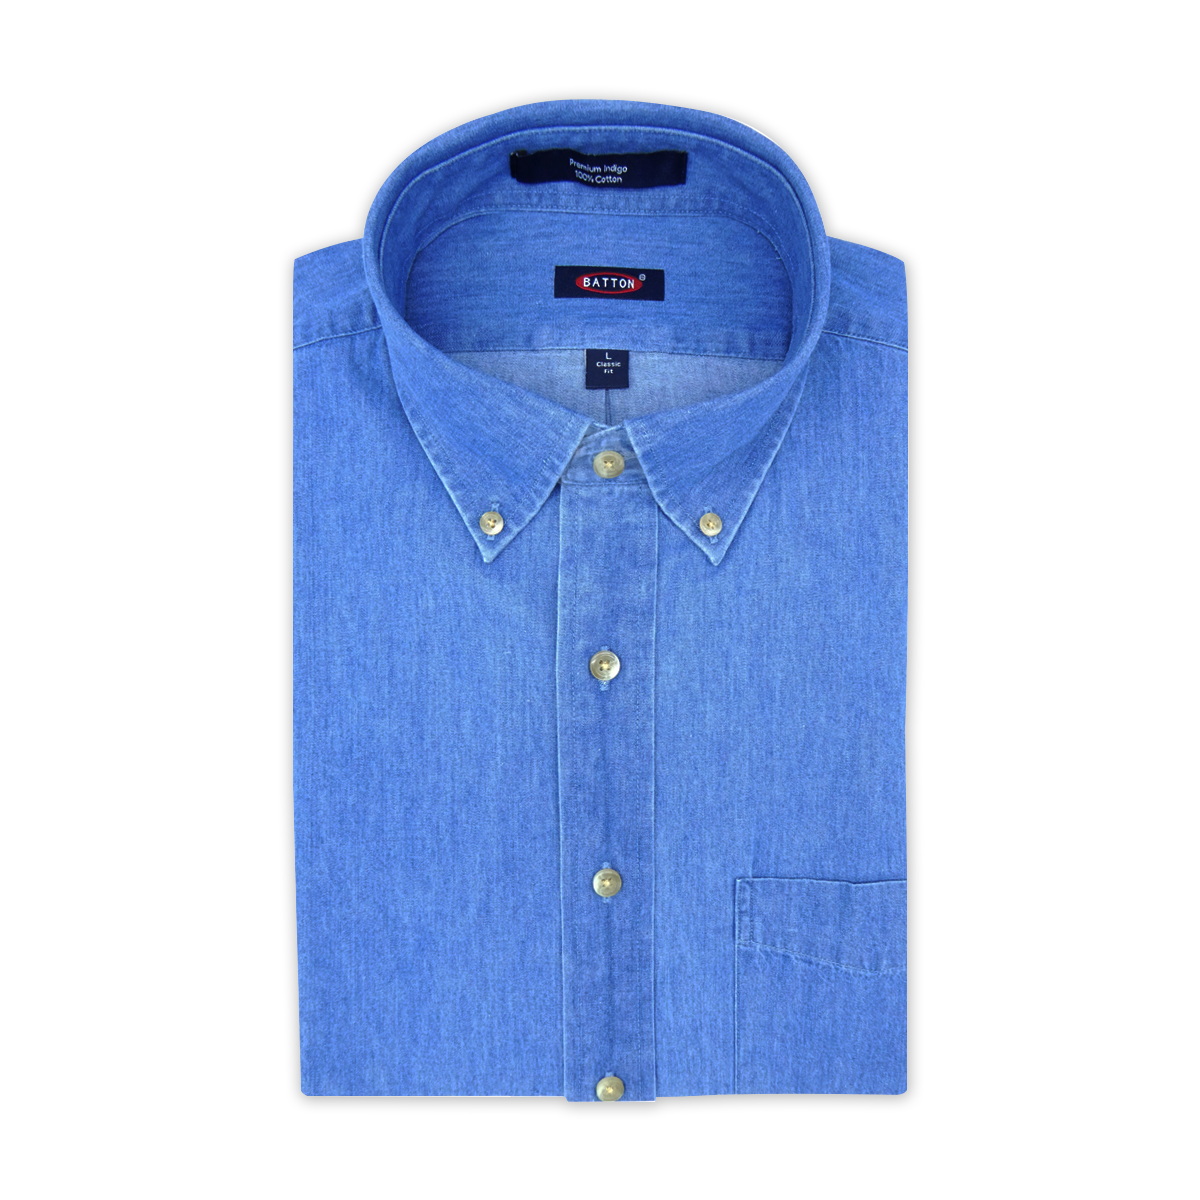 'Gilbert' Solid Mid Indigo Denim Cotton Sport Shirt by Batton